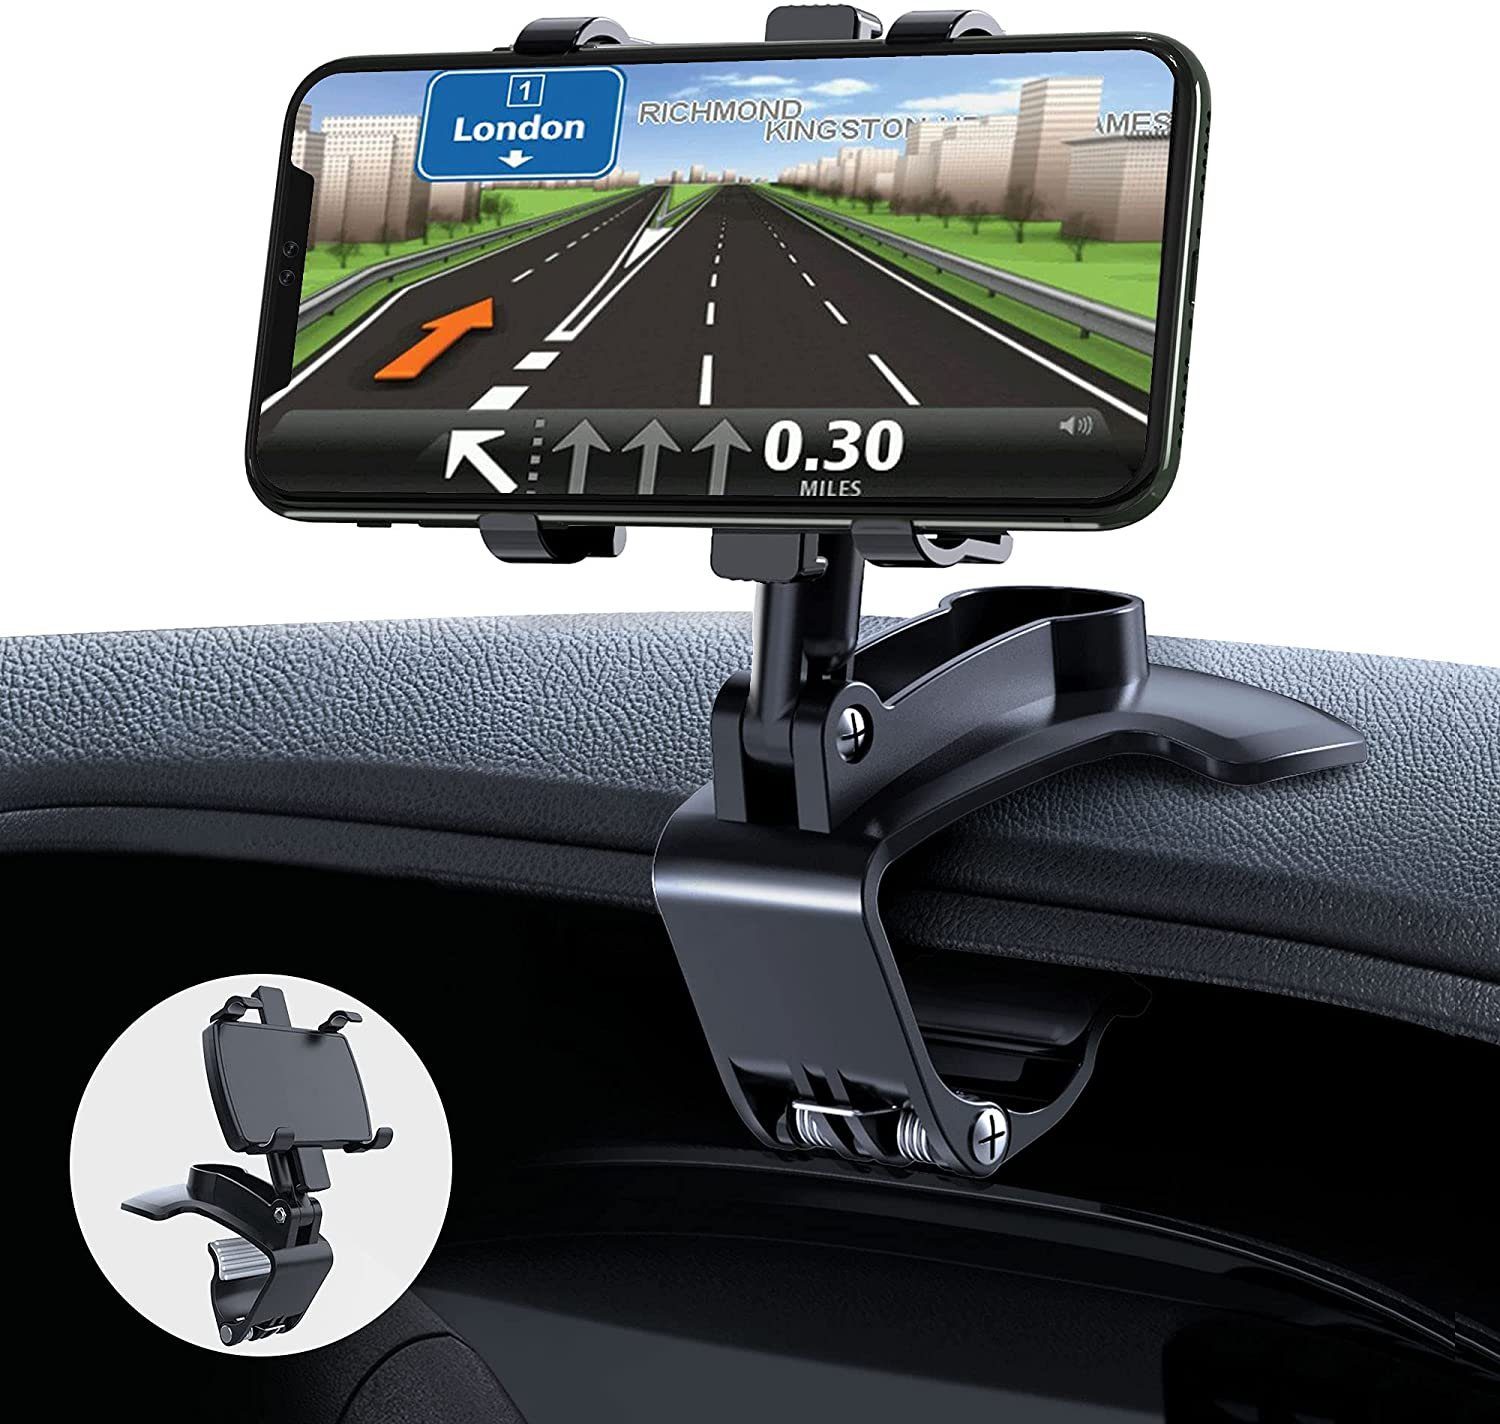 Black GESMA Handyhalterung Auto Handyhalter fürs Auto Lüftung 360°Drehbar Flexibel Silikon Schutz Smartphone Halterung Auto Kompatibel mit iPhone/Samsung/Huawei/Google/Xiaomi/LG oder GPS-Gerät.